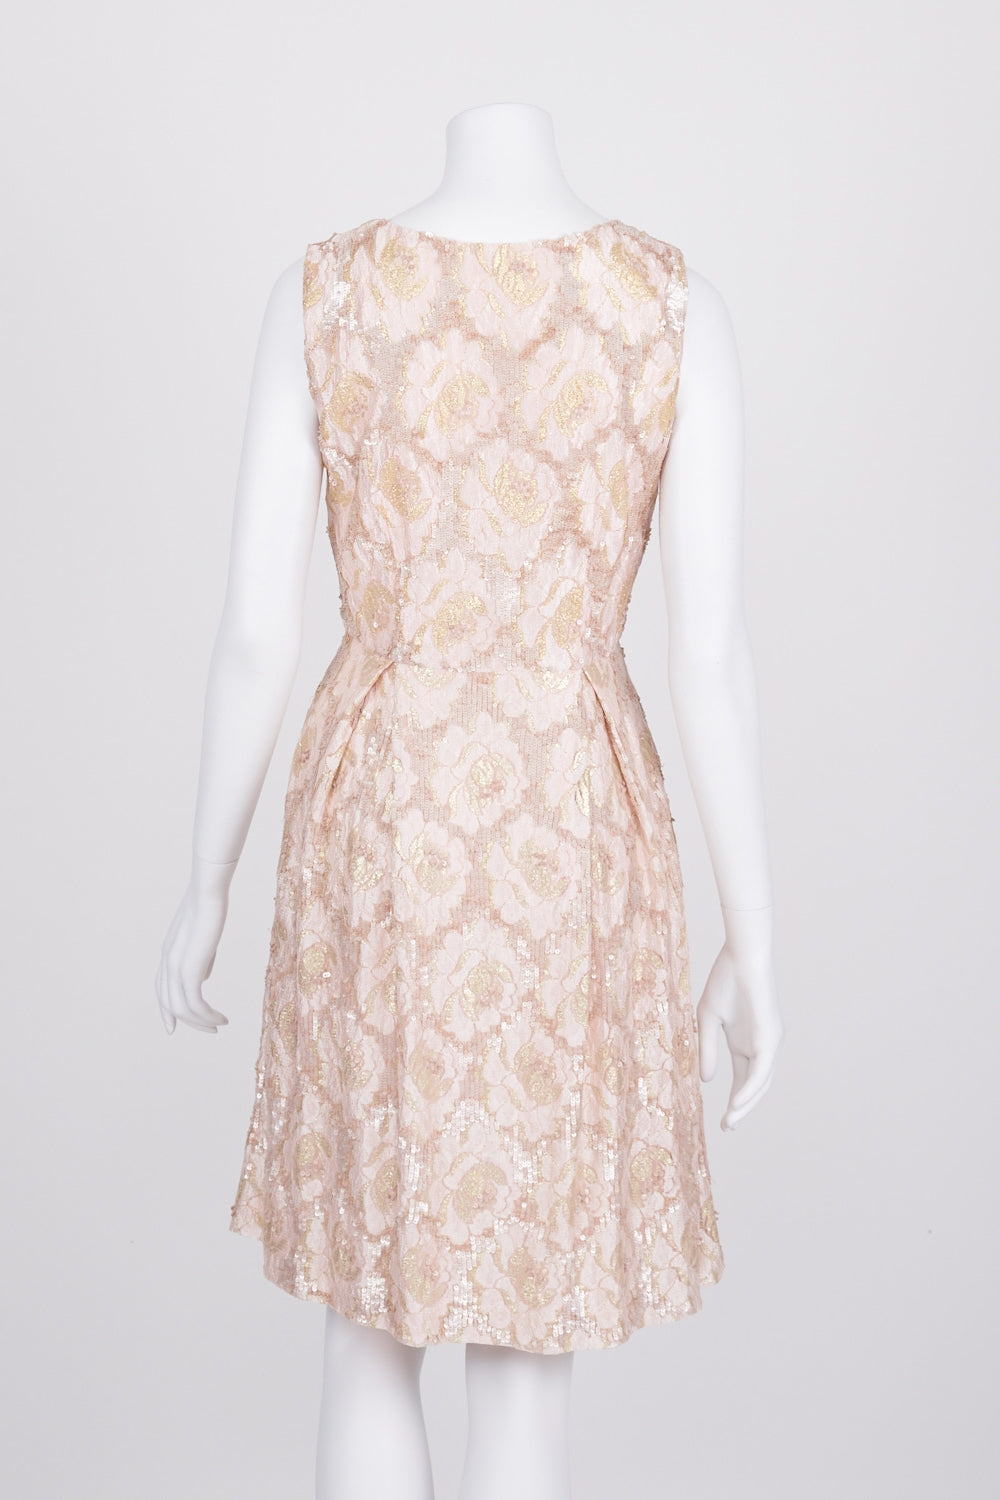 Alannah Hill Sequin Sleeveless Pleated Dress 10